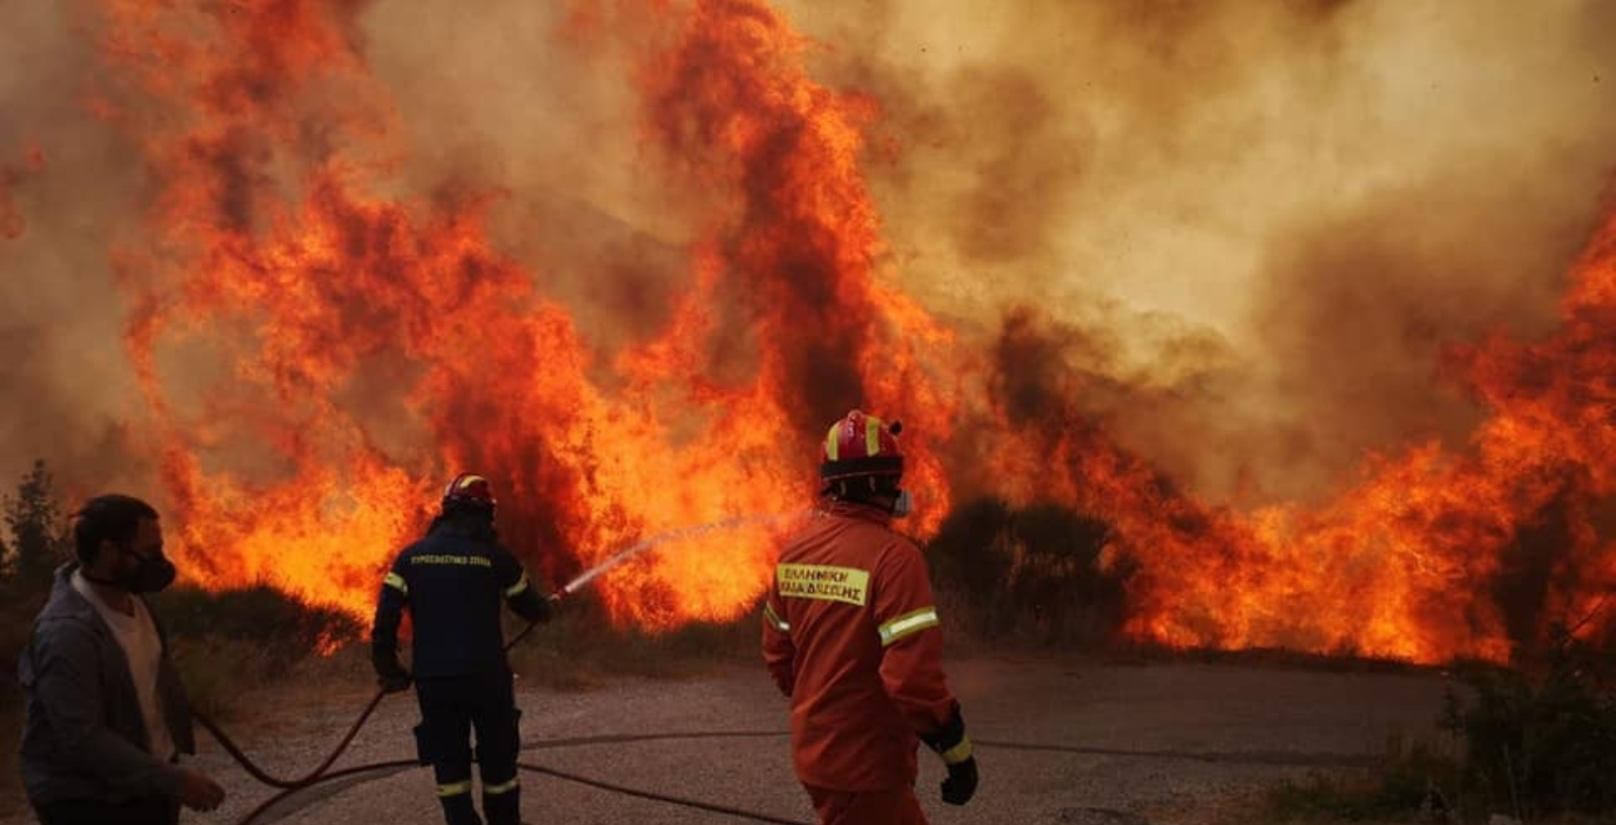 πυρκαγιά στην ανατολική μάνη: συνεχείς αναζωπυρώσεις λόγω τον ισχυρών ανέμων – ενεργοποιήθηκε το copernicus 23